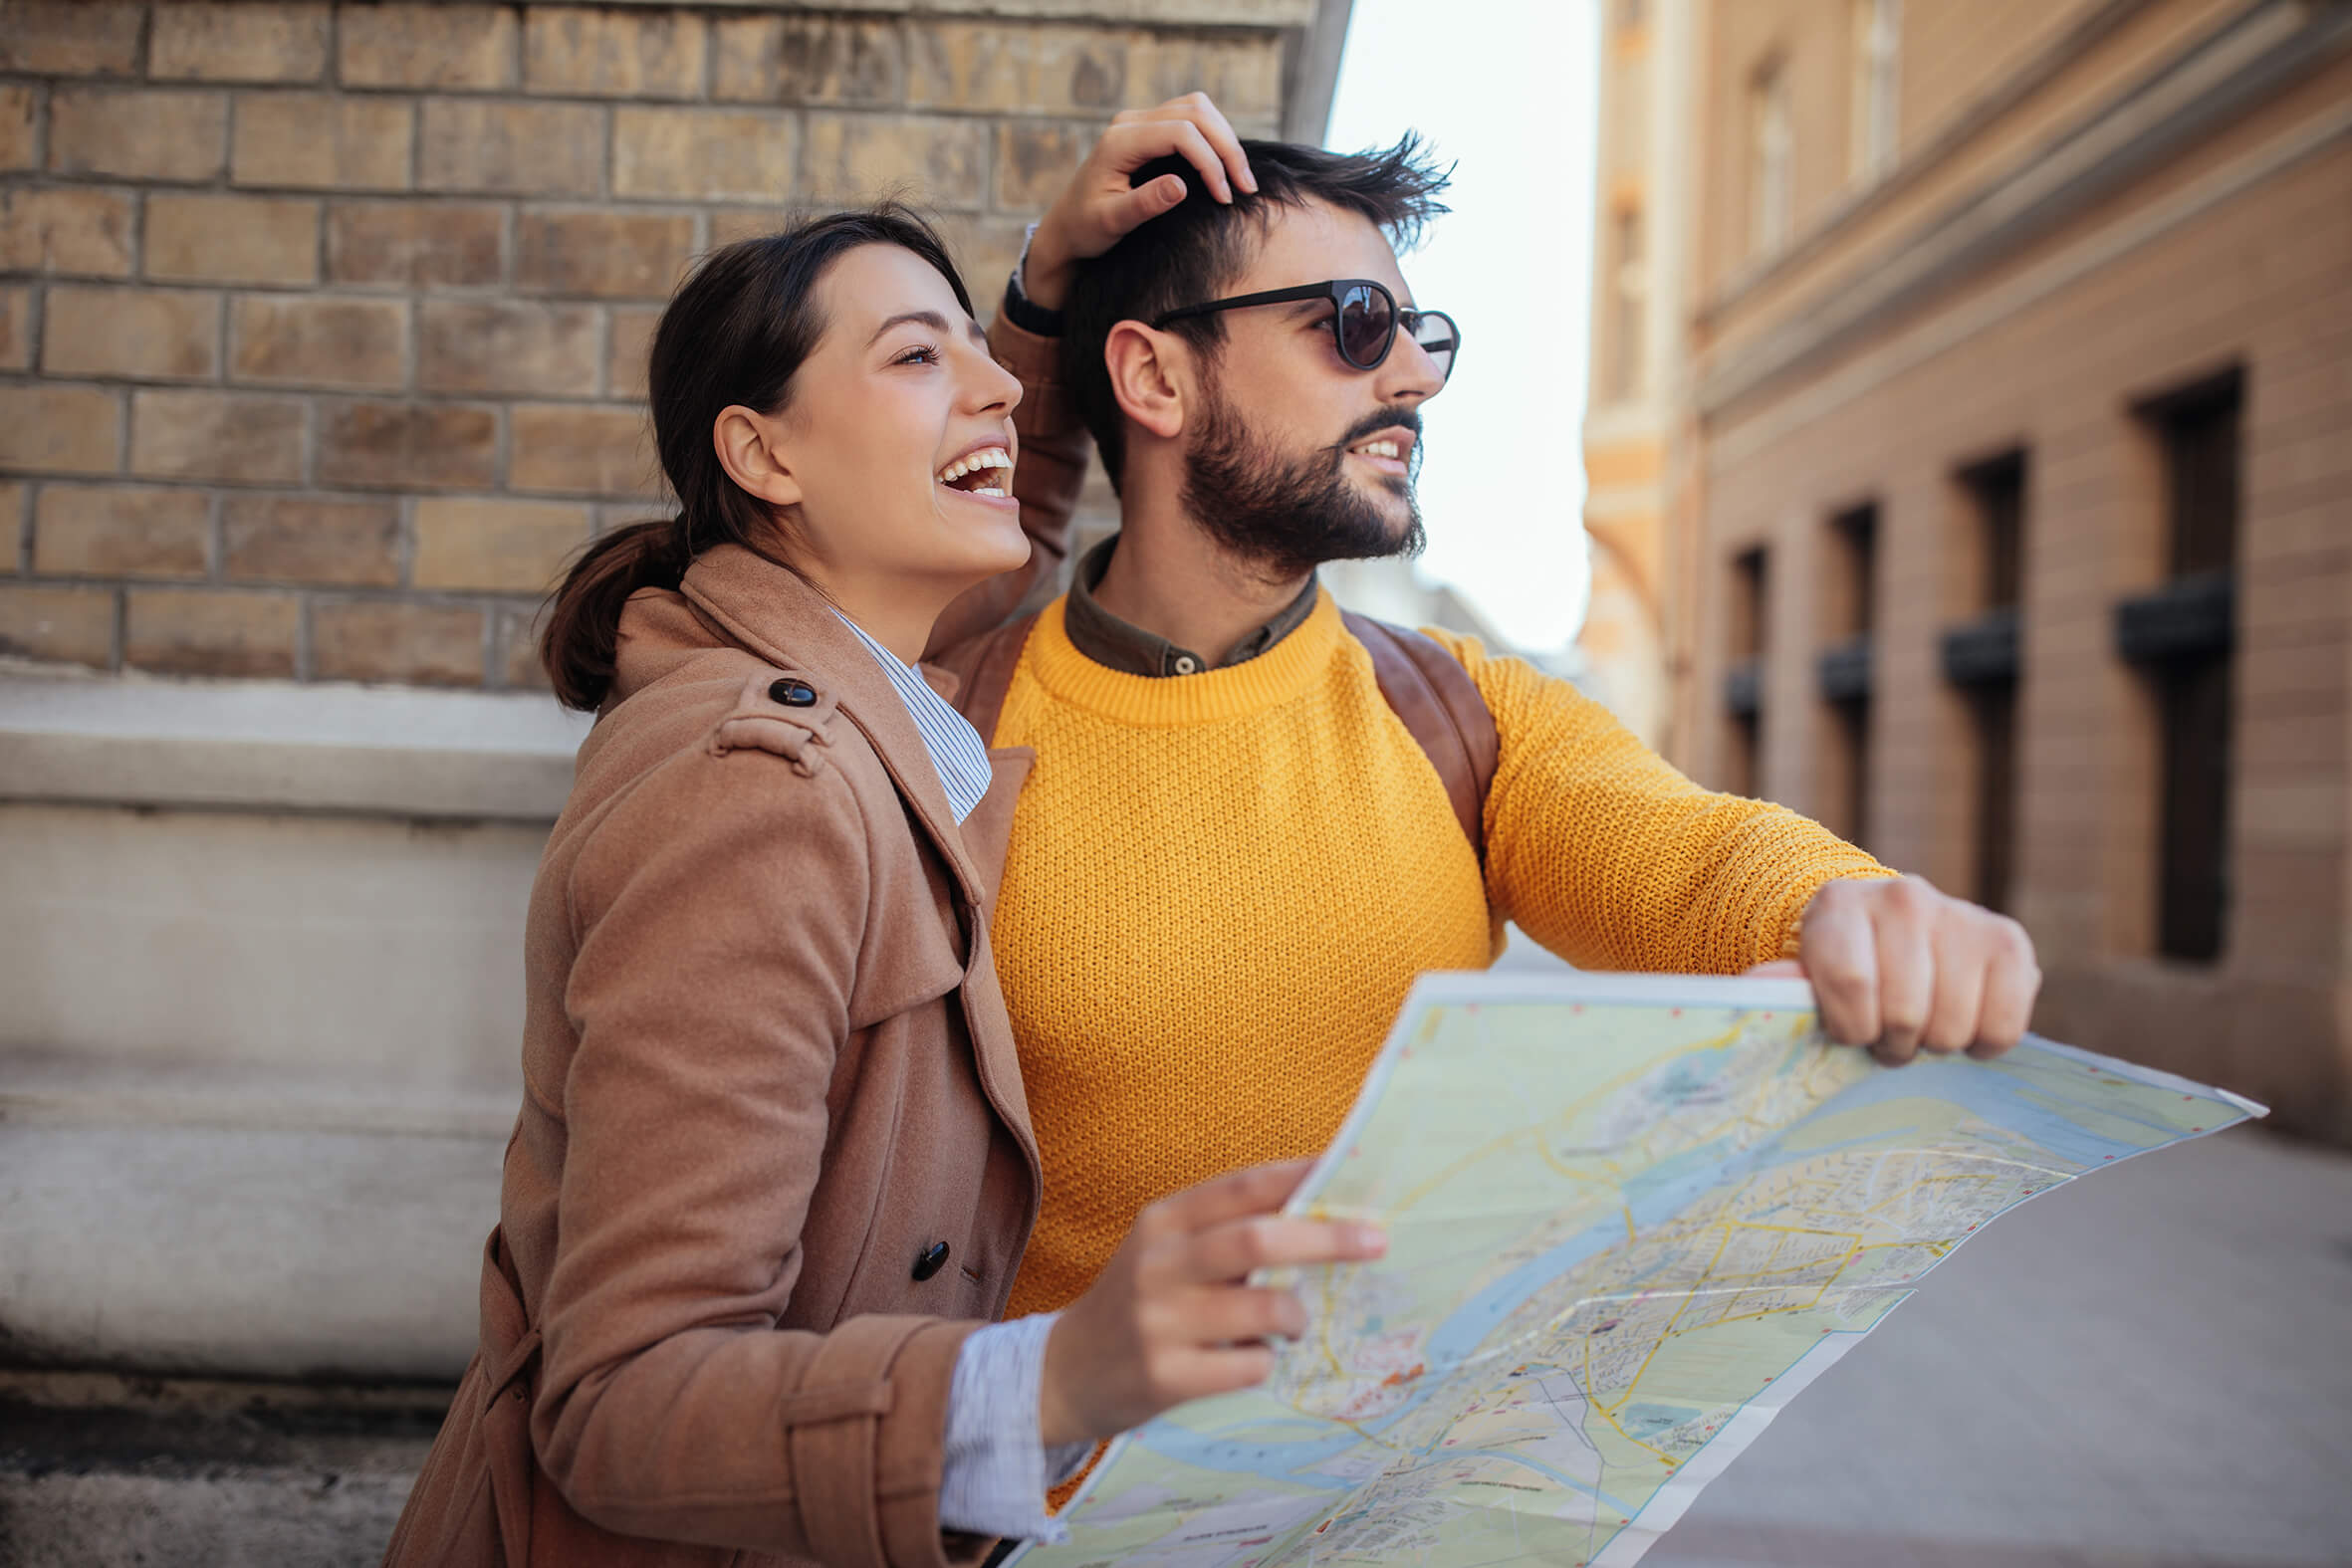 Fröhliches Paar auf Stadterkundung. Eine Frau im braunen Mantel lacht und lehnt sich an einen Mann mit einem sonnengelben Pullover und Sonnenbrille, der eine Karte hält.